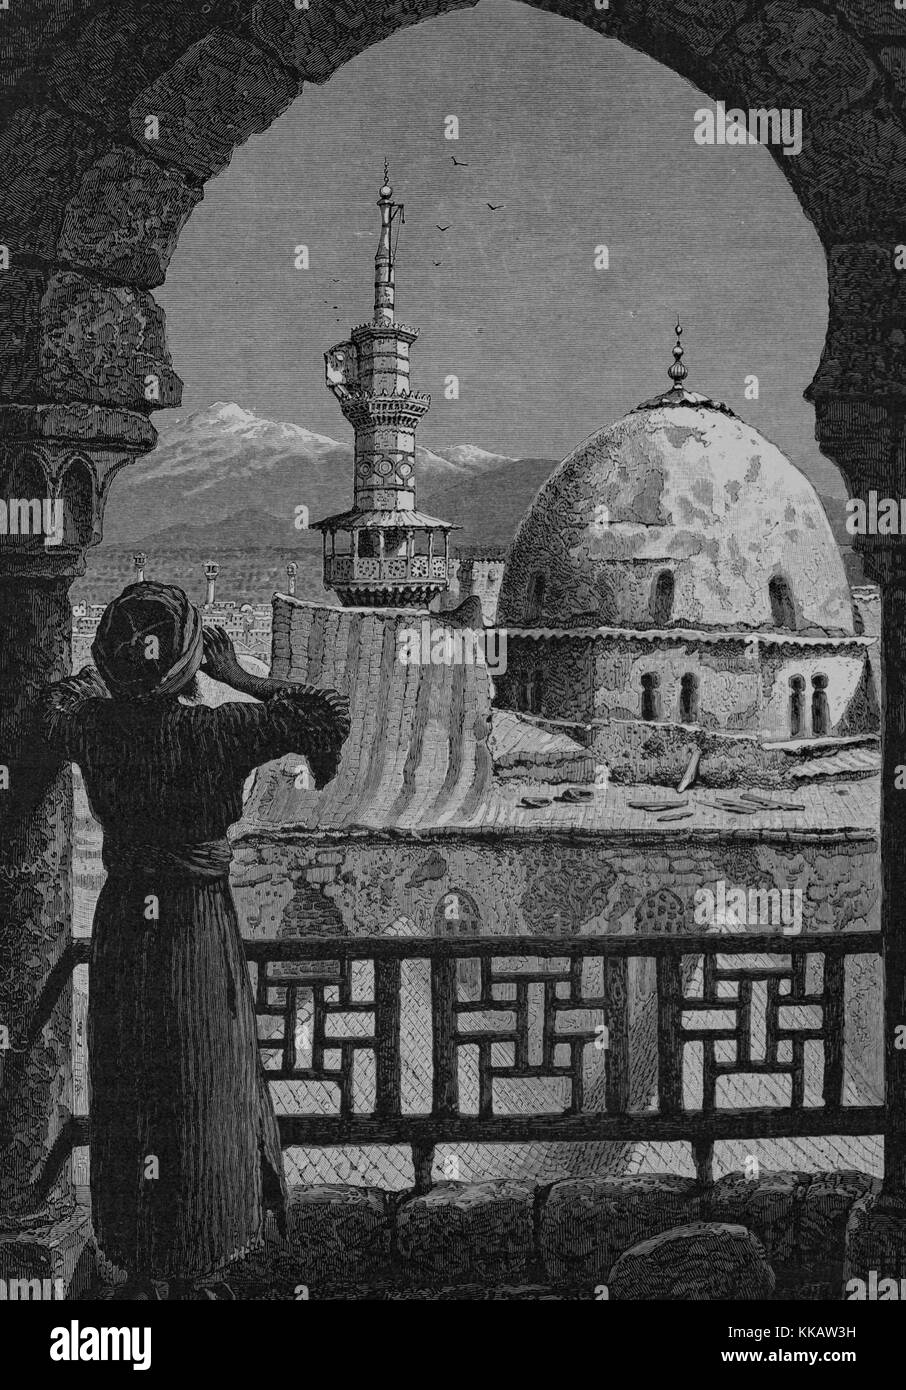 Ein kupferstich mit der Darstellung eines Mueddin der Gebetsruf vom Minarett der 'Isa, das ist ein Teil der Großen Moschee, wo muslimische Tradition glaubt, dass Jesus am Tag des Gerichts, Damaskus, Syrien, 1882 erscheinen wird. Von der New York Public Library. Stockfoto